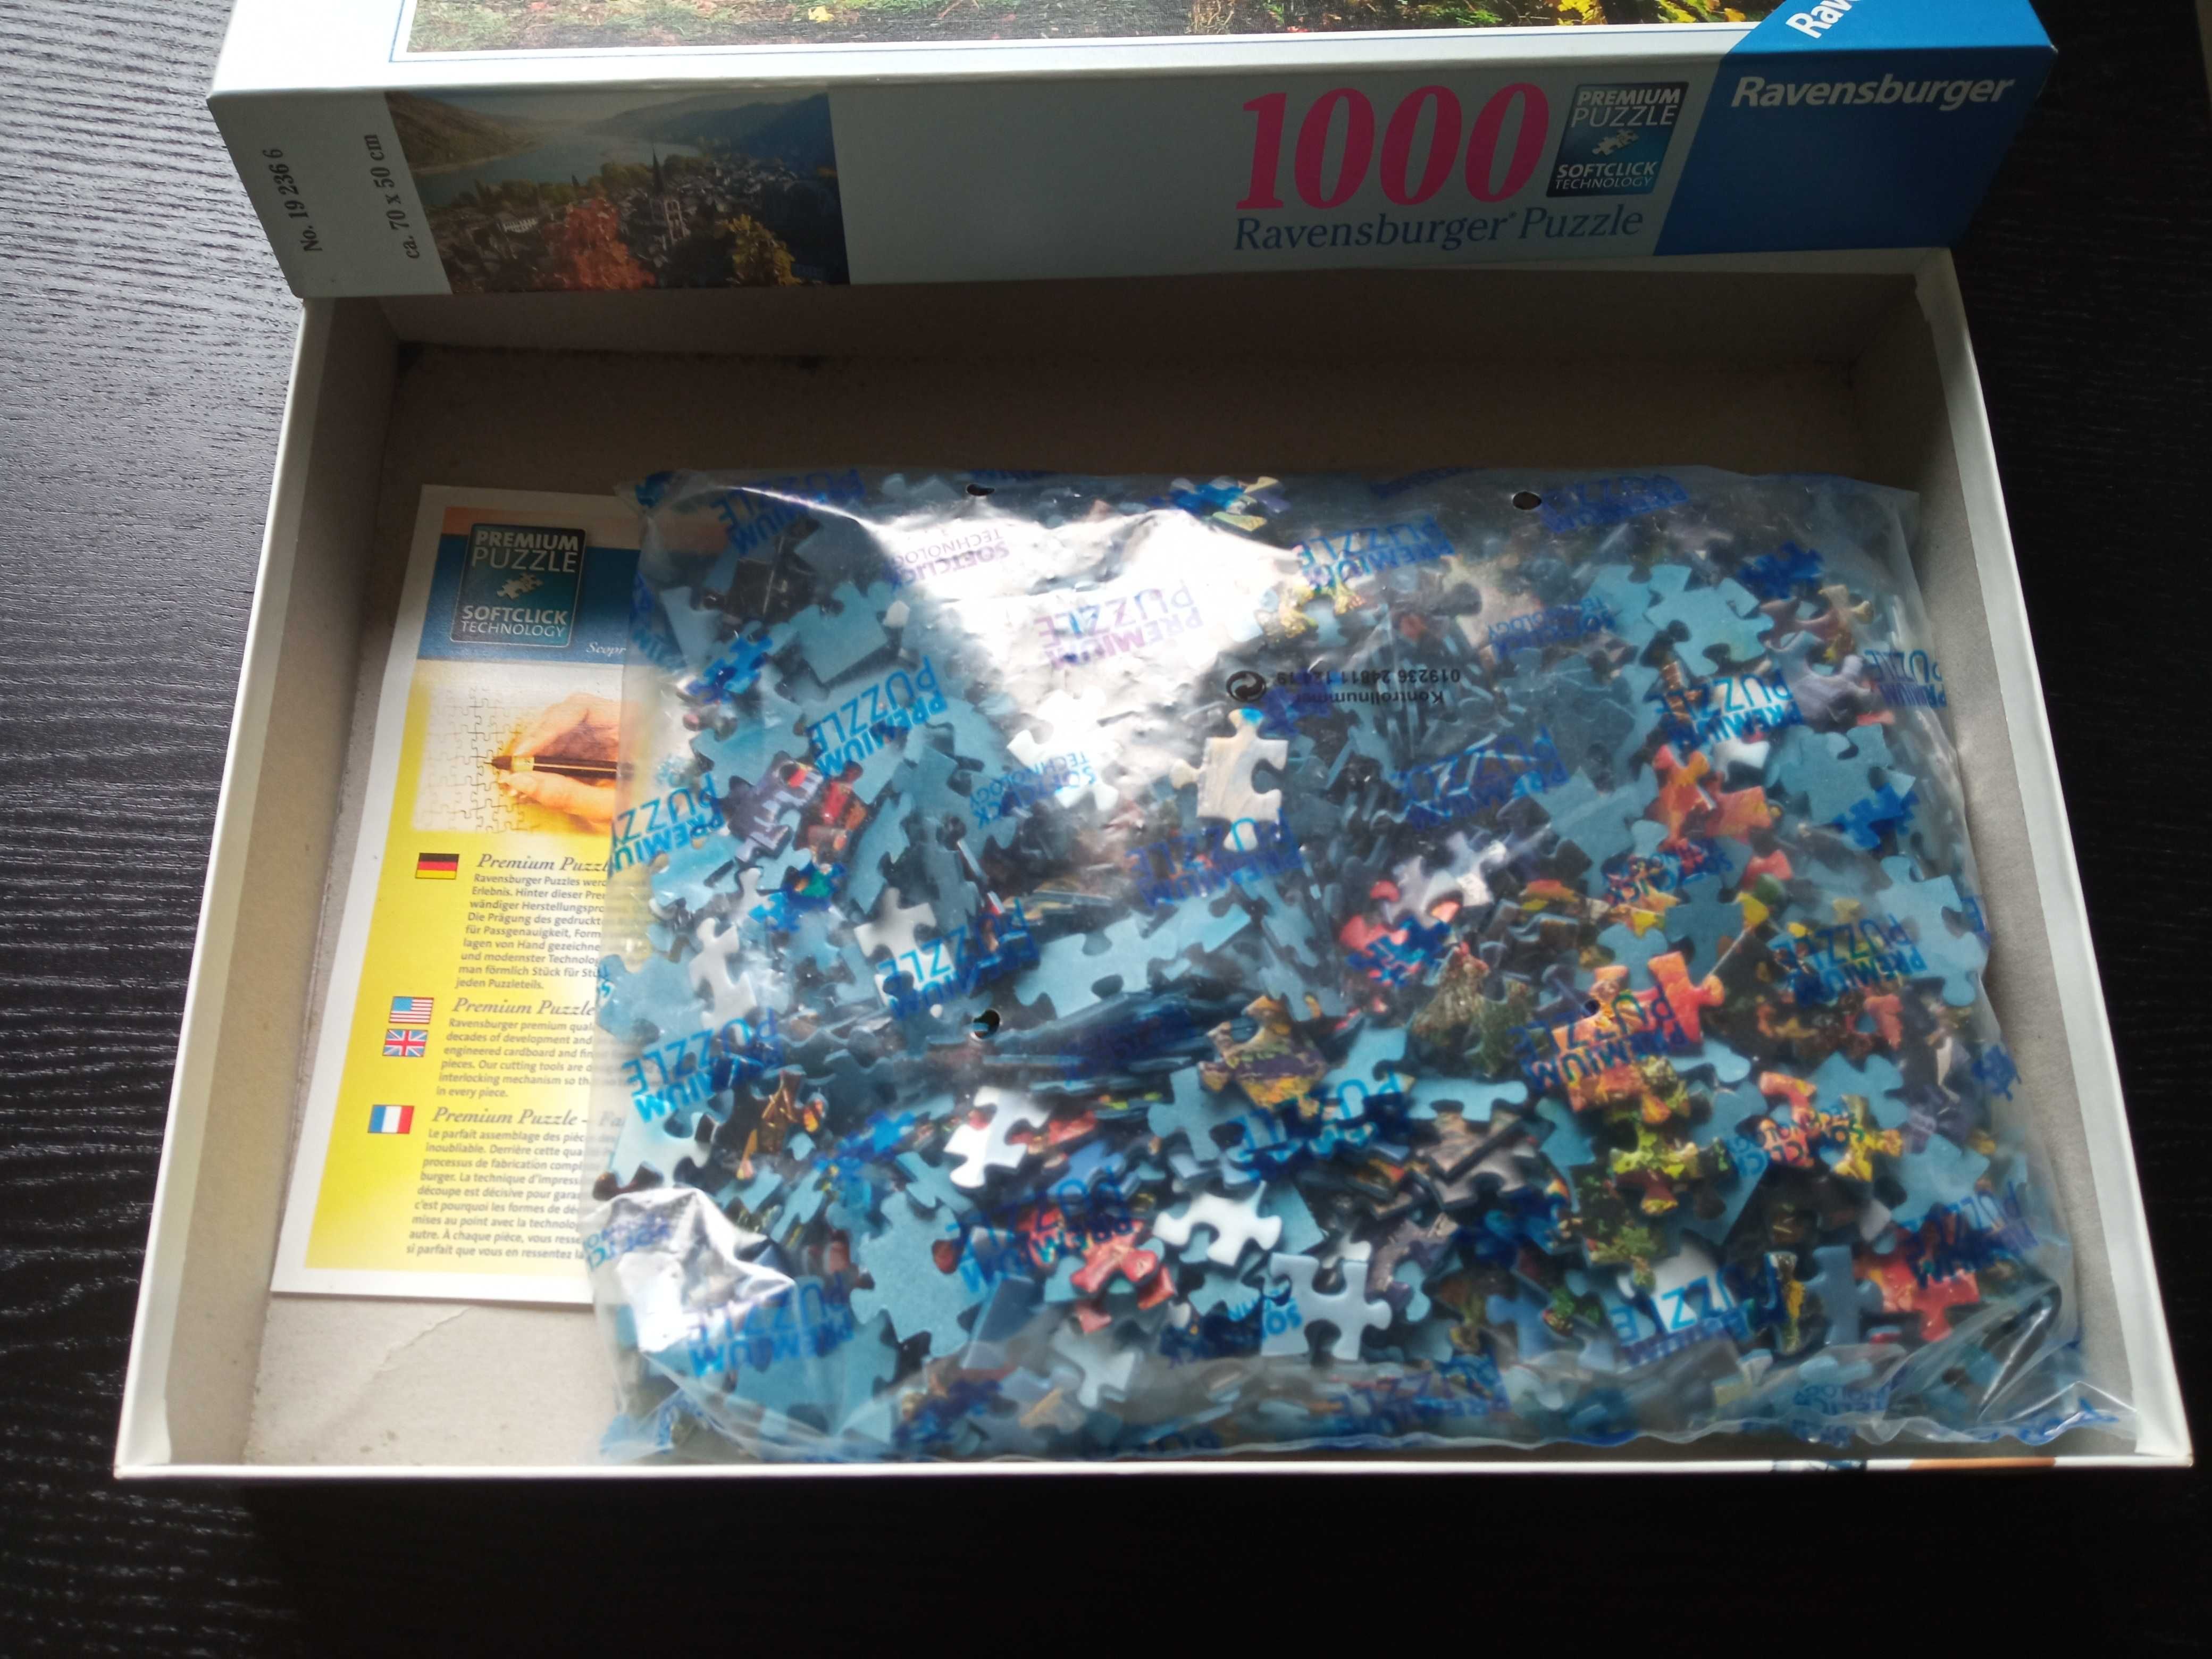 Puzzle Ravensburger 1000 - 2x nowe, 1x używane - cena za wszystkie